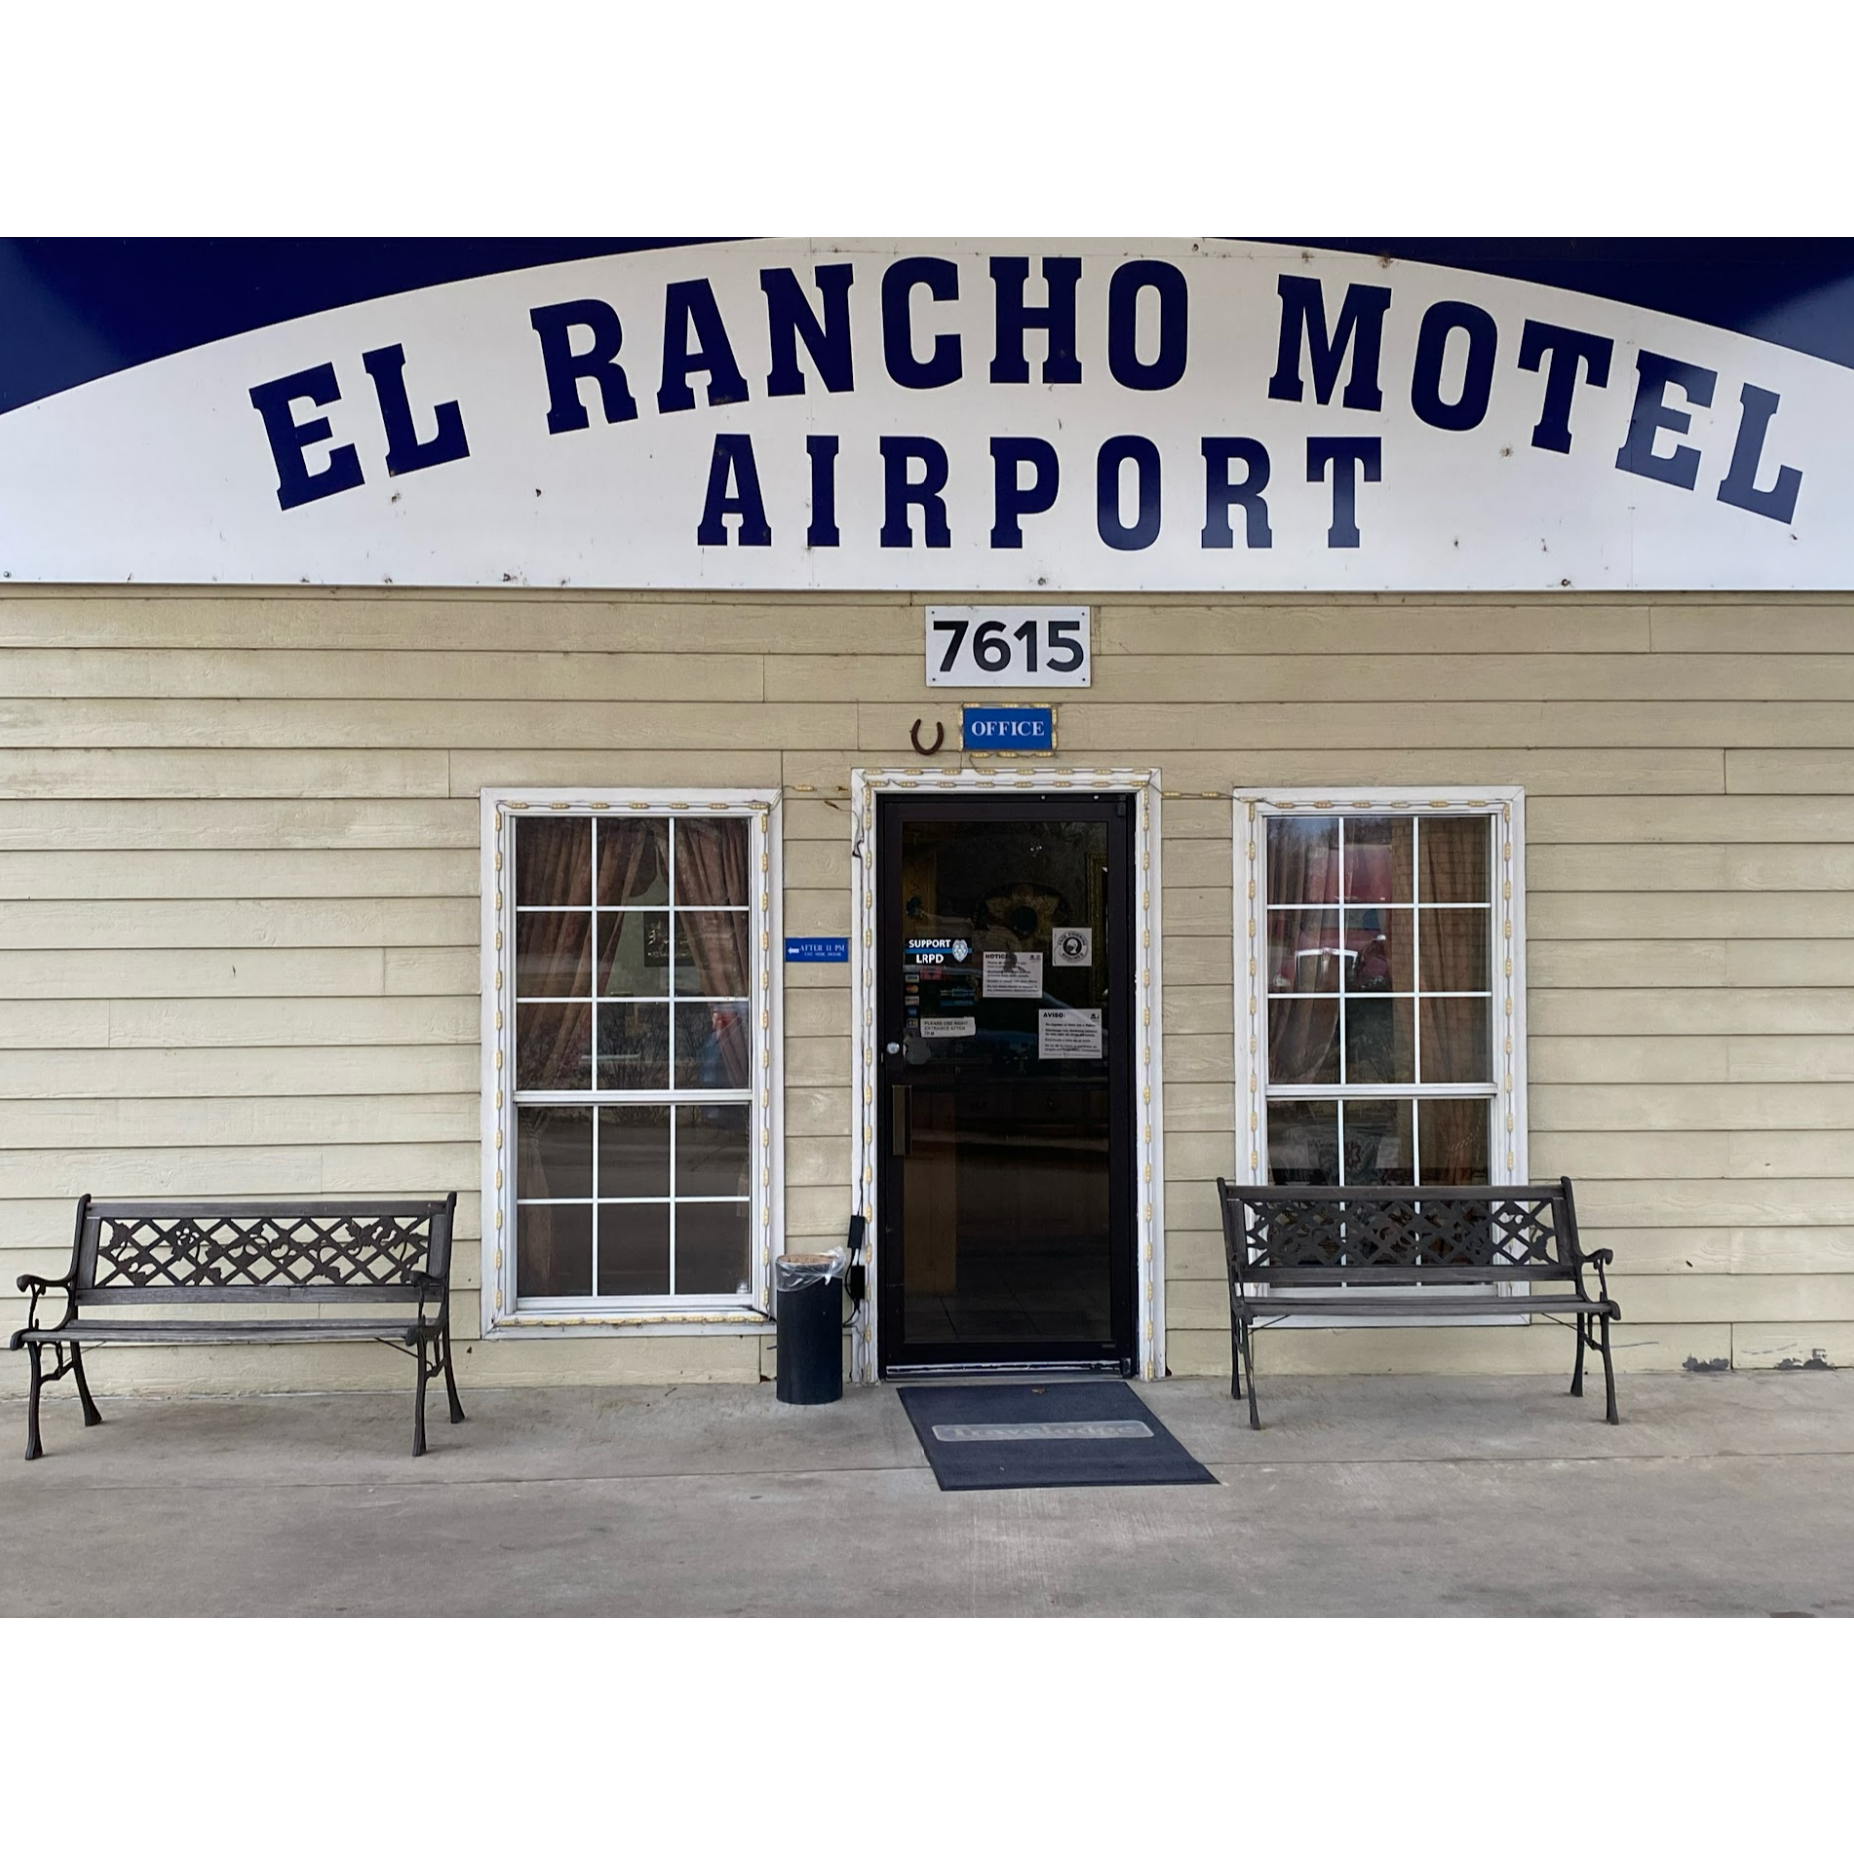 El Rancho Motel - Little Rock, AR 72206 - (501)490-2200 | ShowMeLocal.com